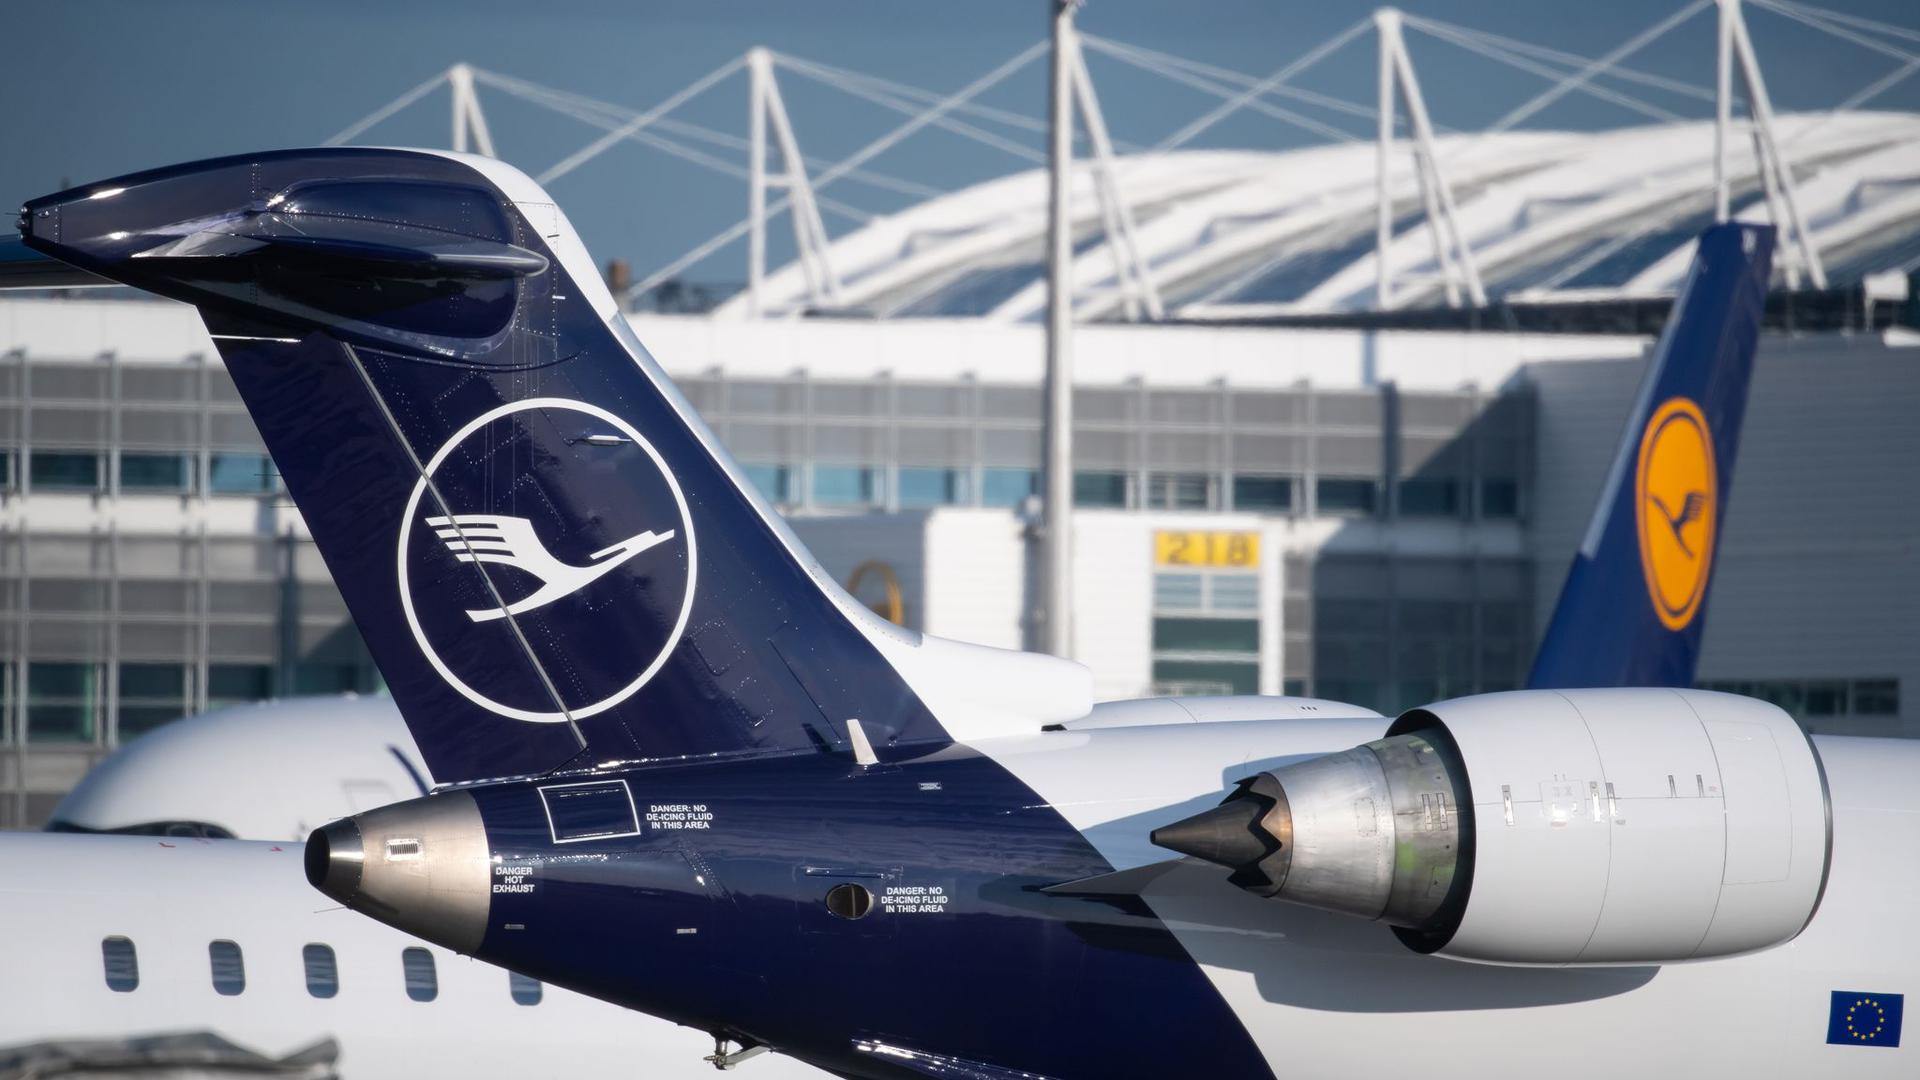 Bei der Lufthansa soll die Anzahl der Führungskräftestellen konzernweit um 20 Prozent reduziert werden.